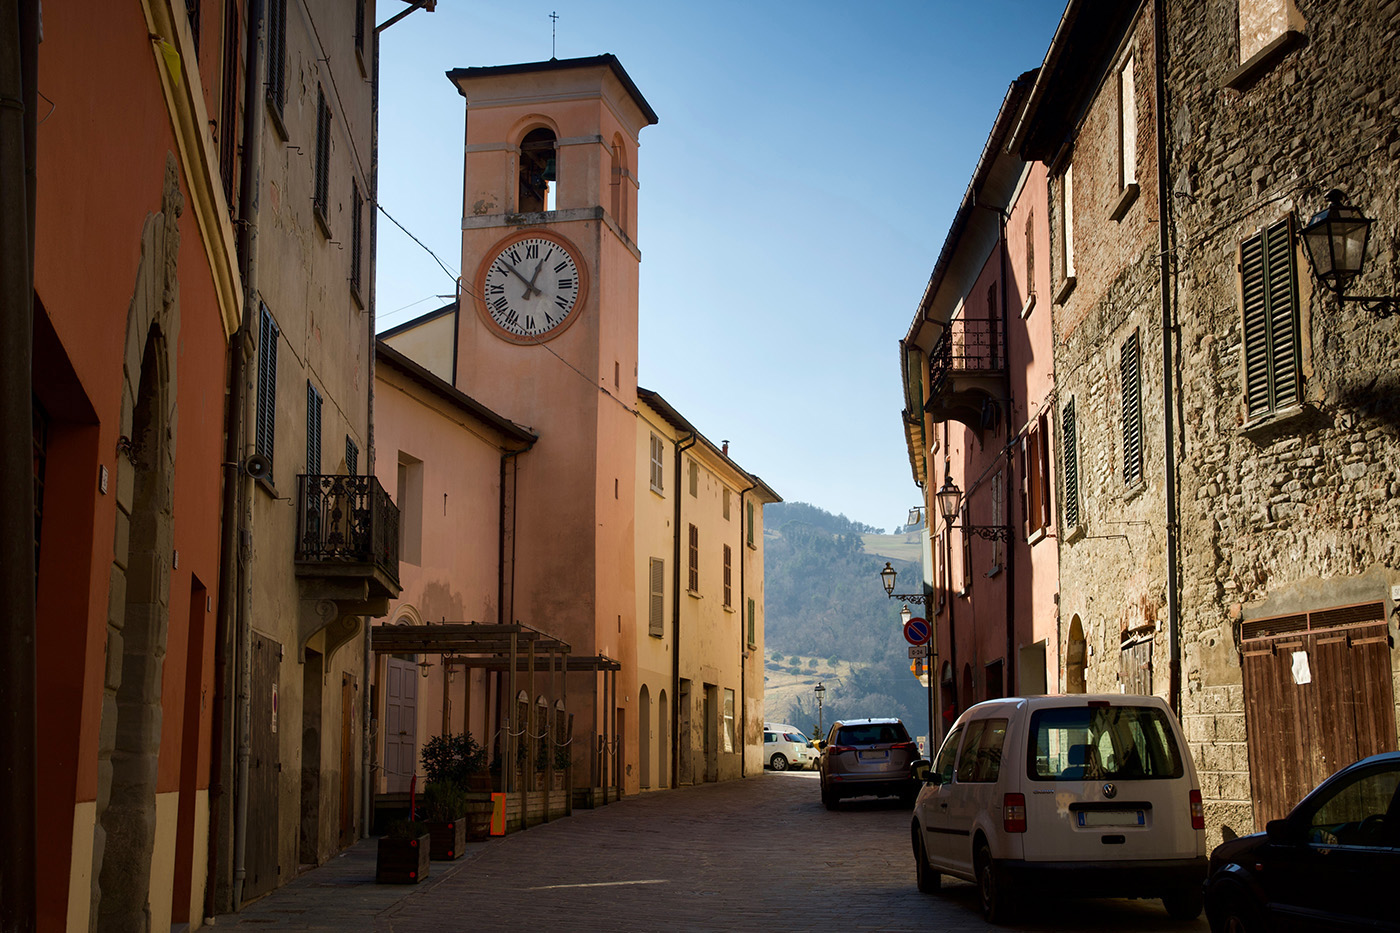 La Torre Civica di Casola Valsenio, centro della Valle del Senio. Si vede una via con una torre e l'orologio.